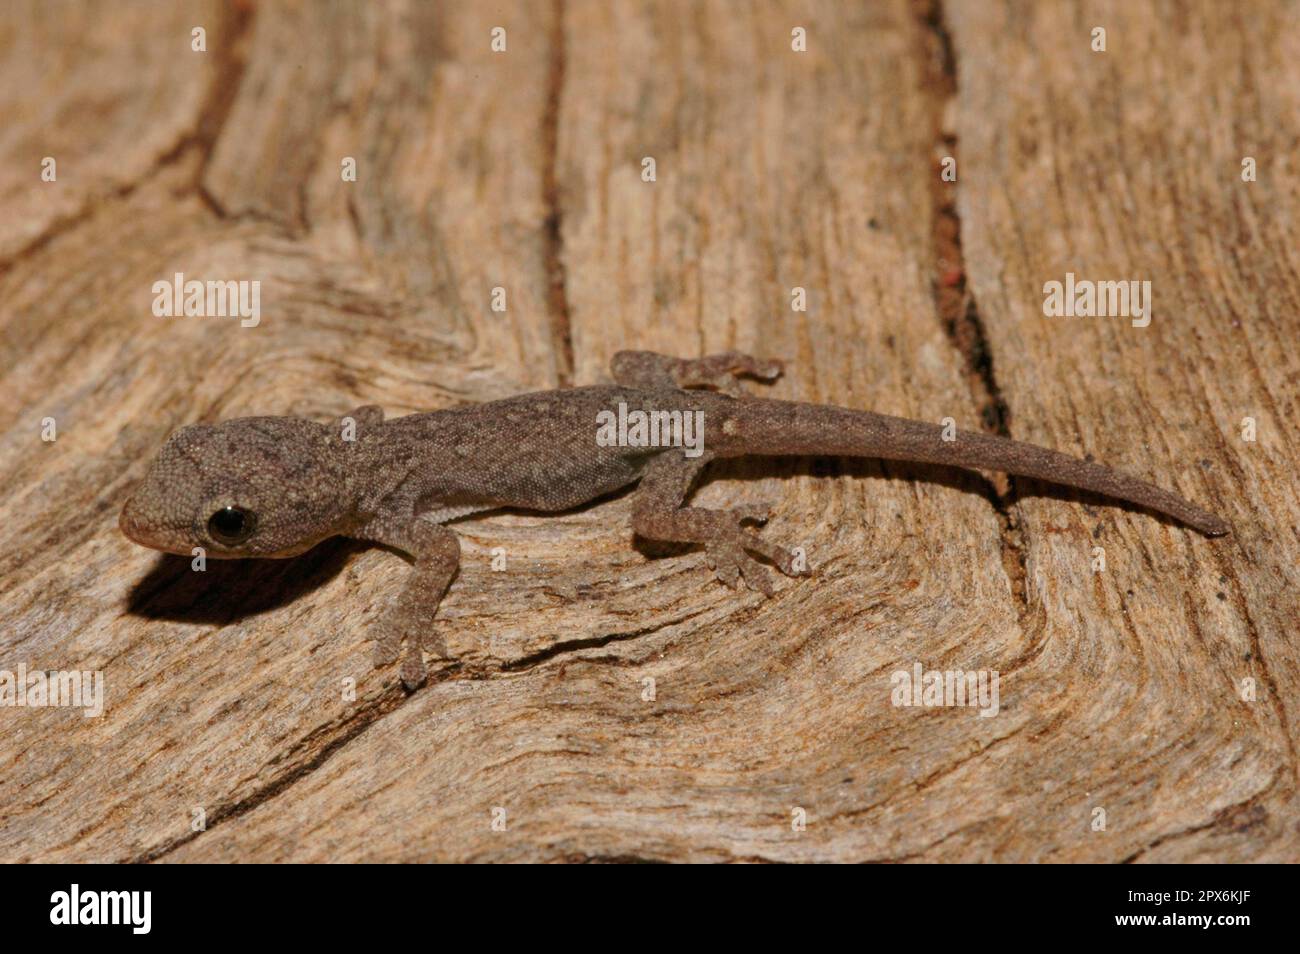 Yellow-headed dwarf gecko Stock Photo